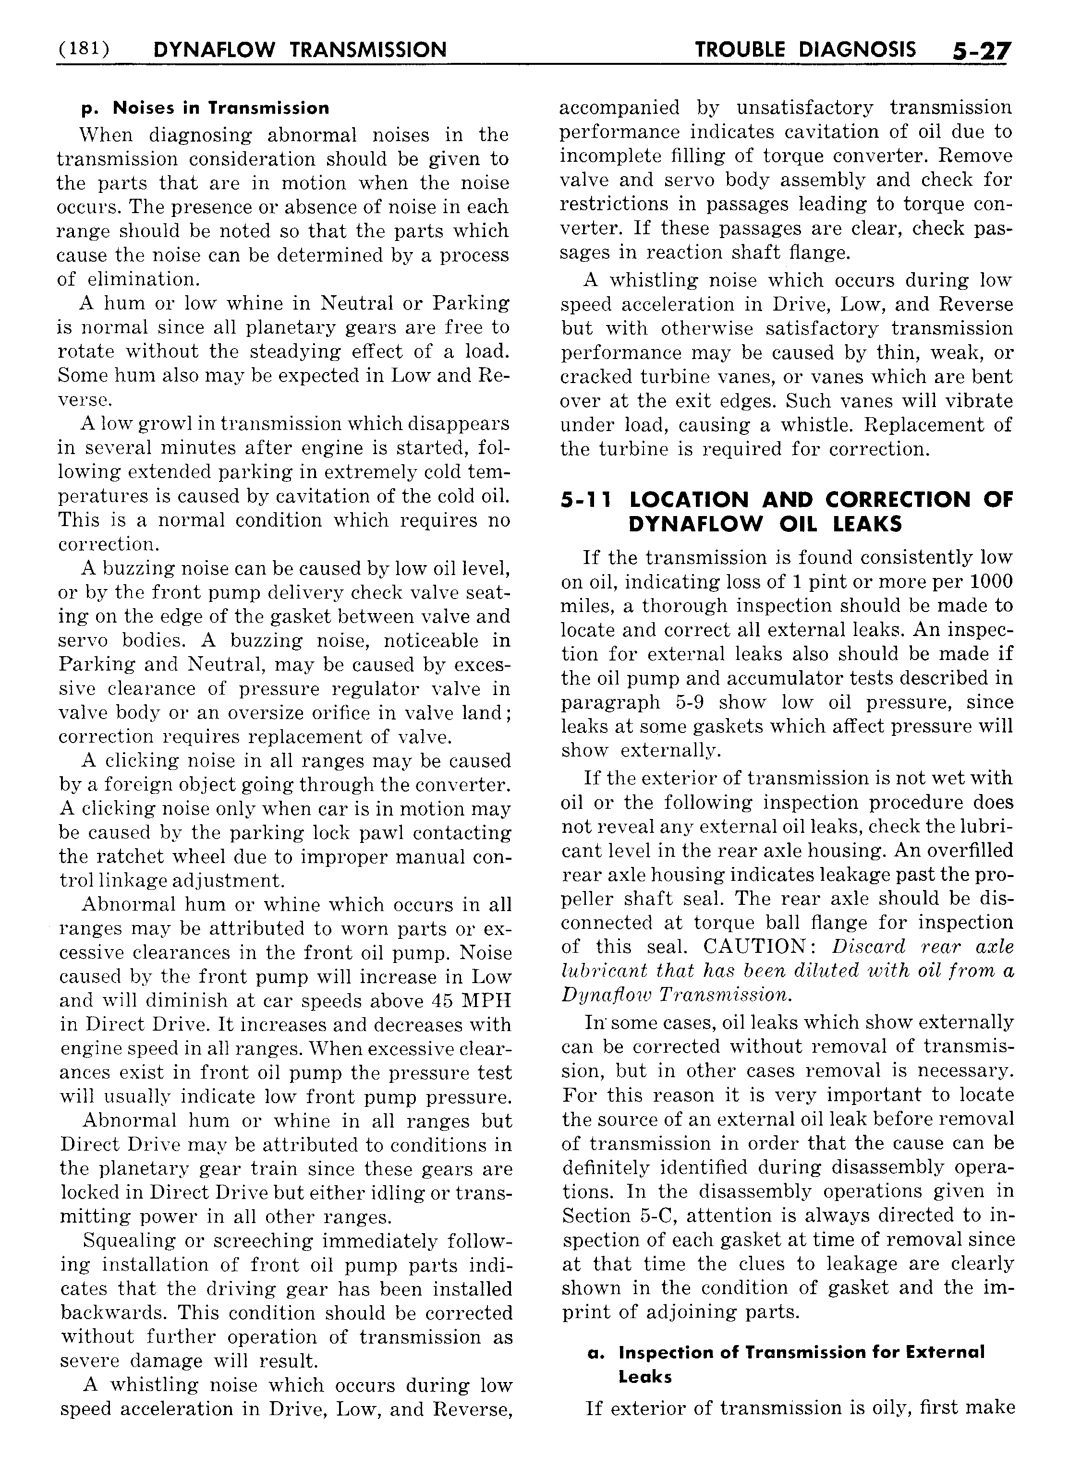 n_06 1954 Buick Shop Manual - Dynaflow-027-027.jpg